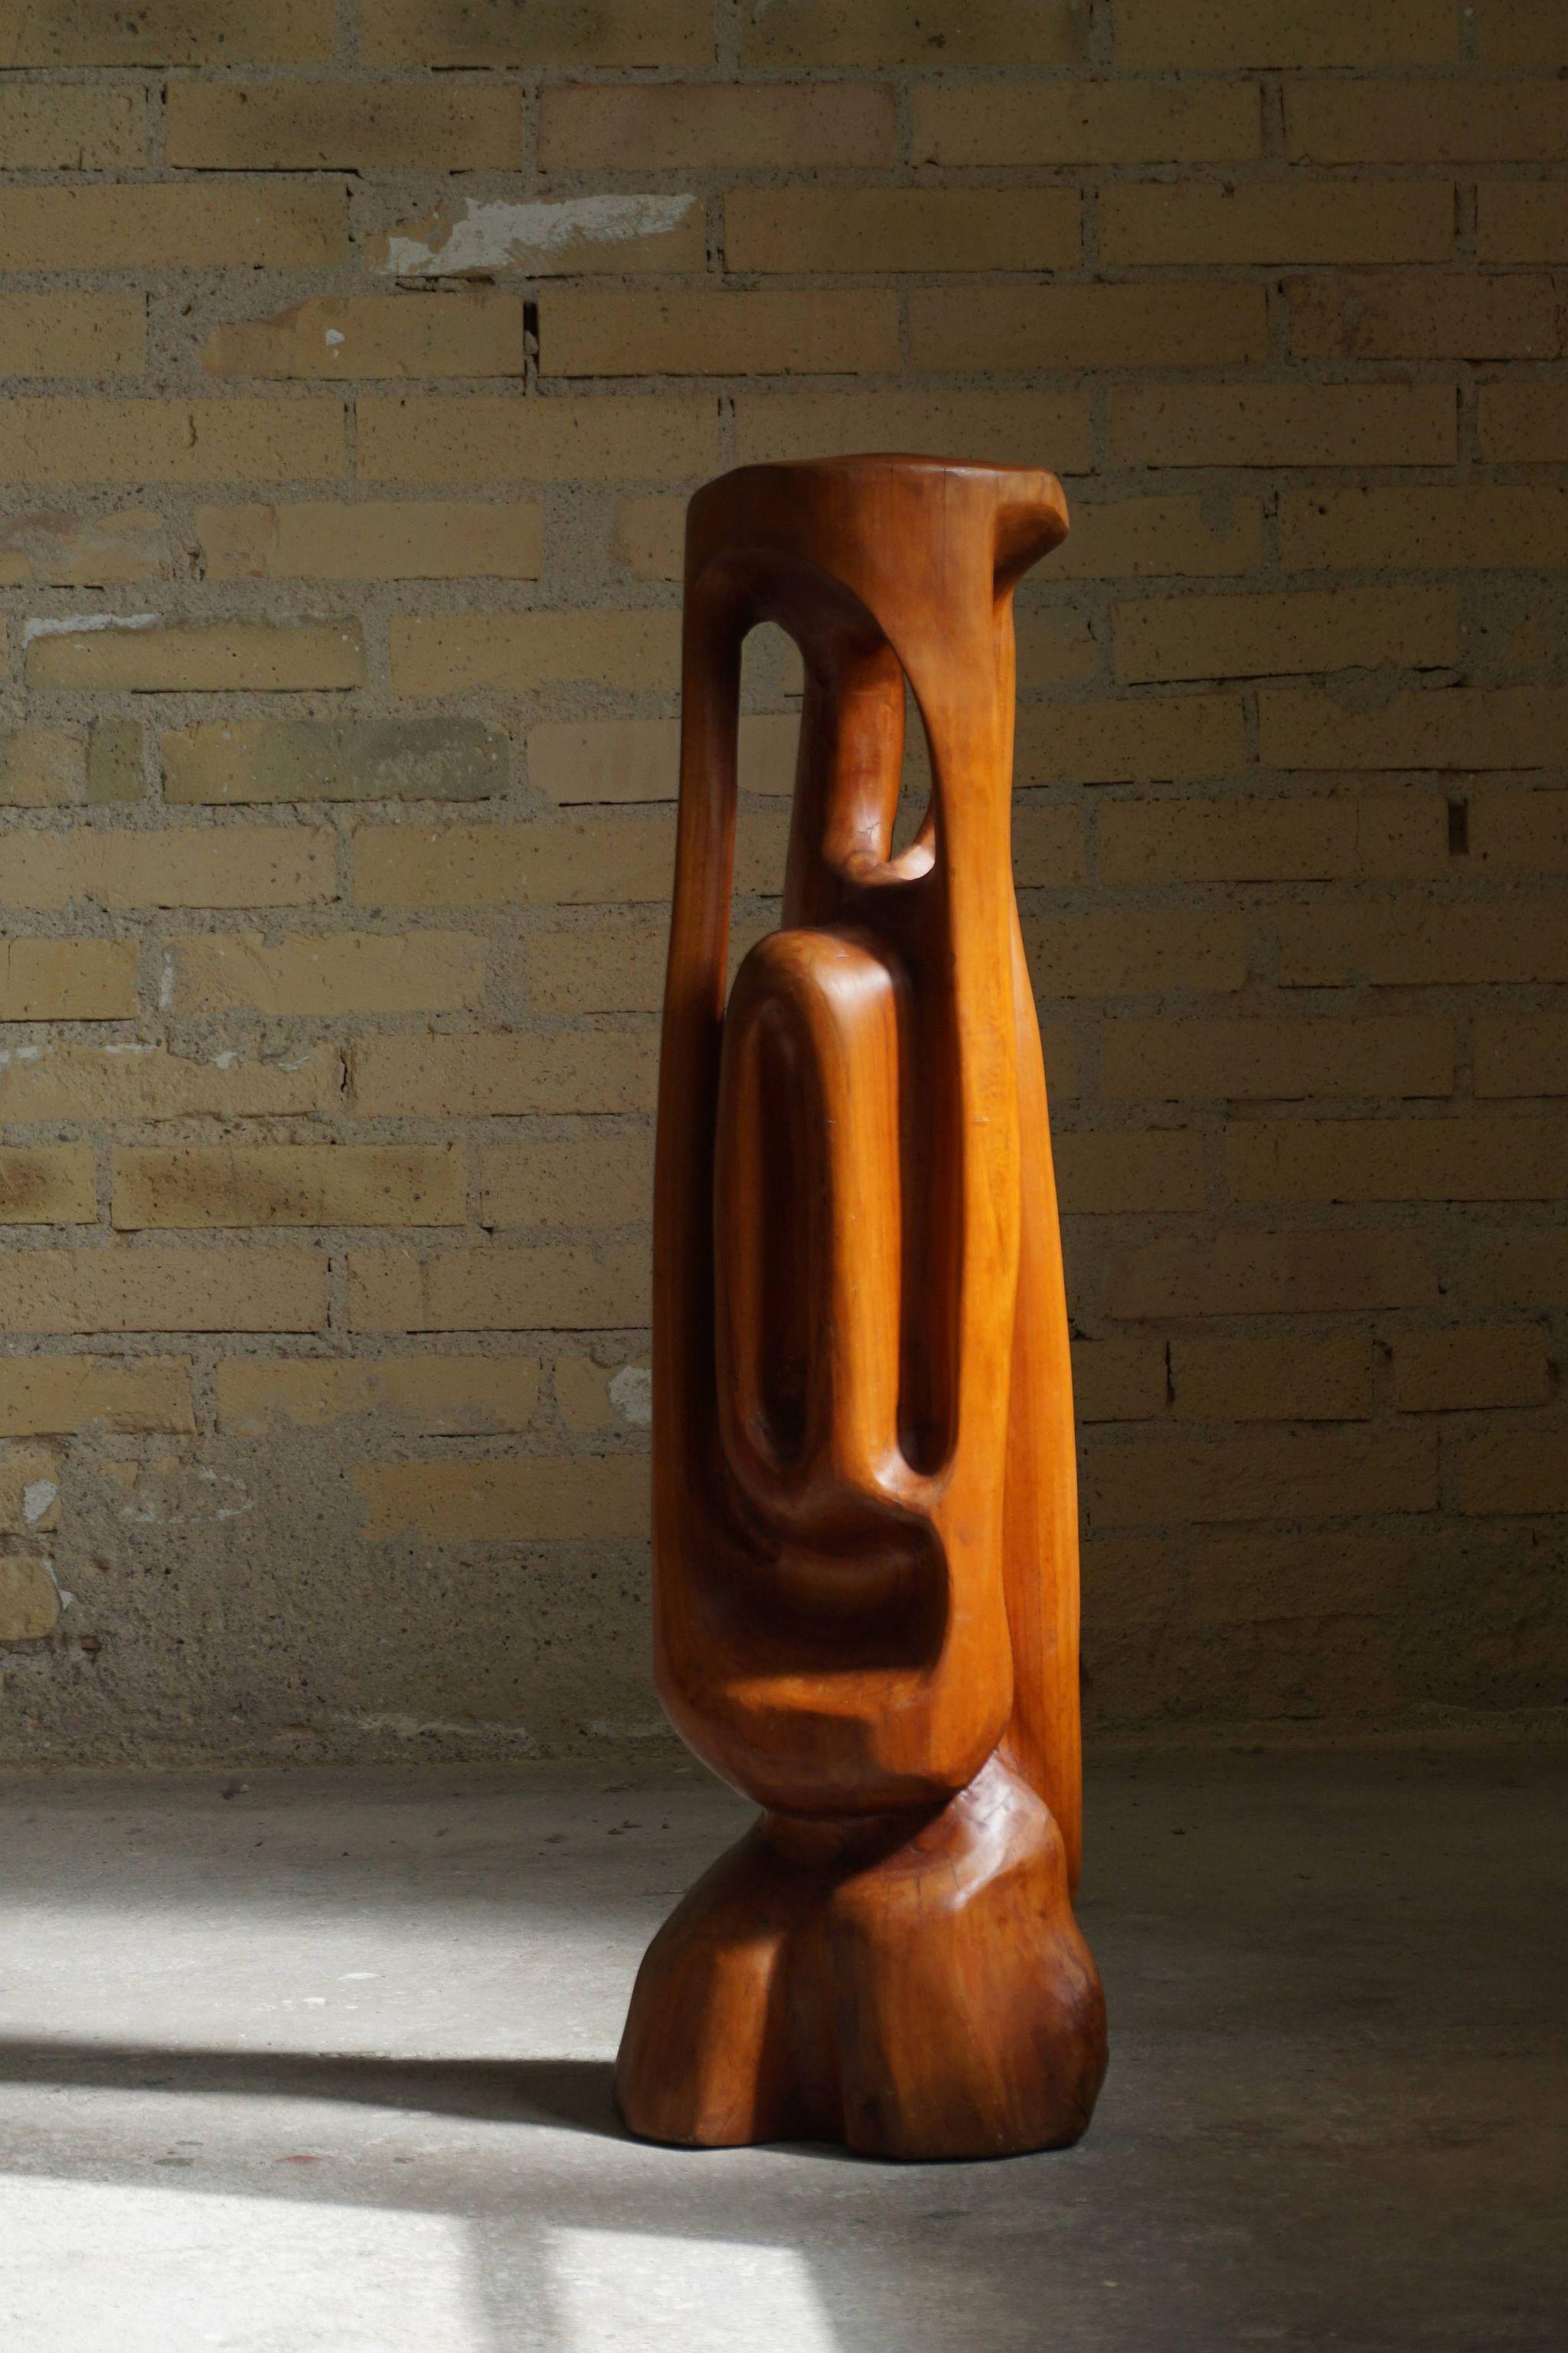 Grande sculpture en bois, réalisée par l'artiste danois Ole Wettergren en 1965. Il s'agit de sa première sculpture en bois.
Ole est célèbre pour ses sculptures en bois et il a été présenté dans des magazines internationaux tels que ARK Journal.